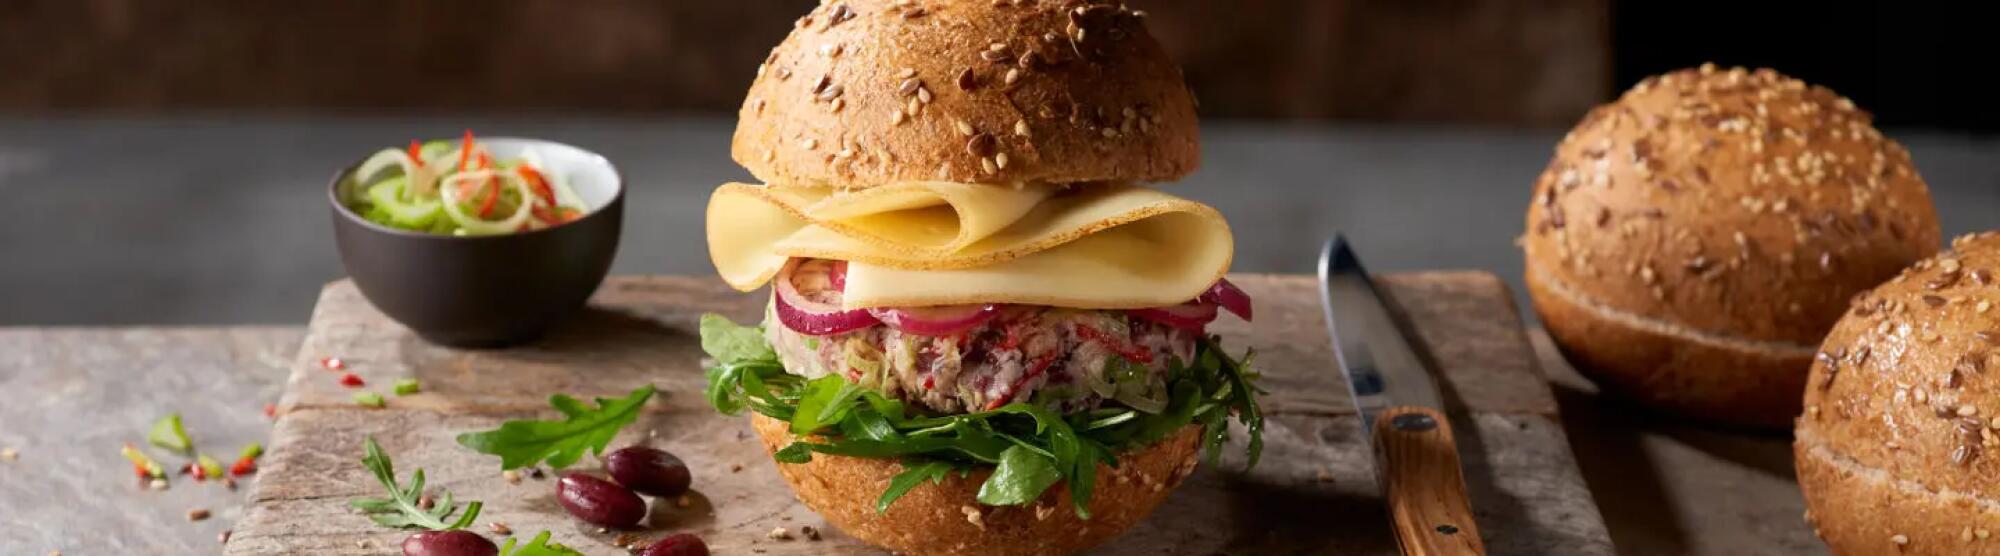 Recette : Burger veggie au fromage et oignons marinés